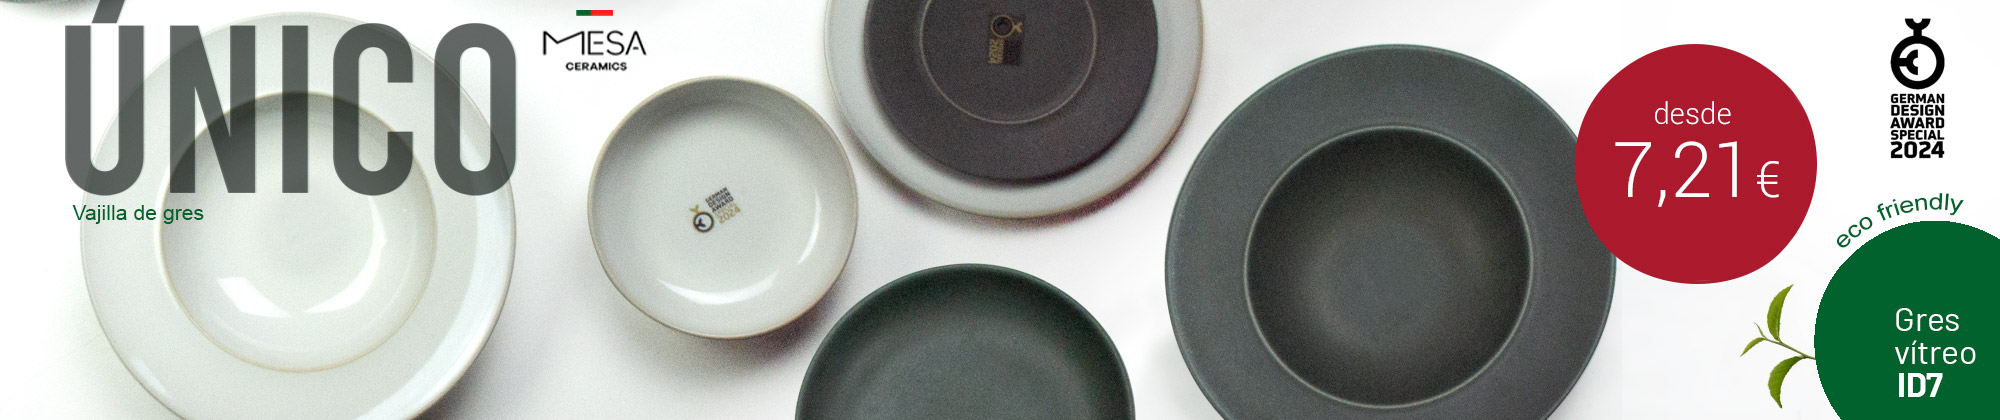 Serie Unico ID7 de Mesa Ceramics